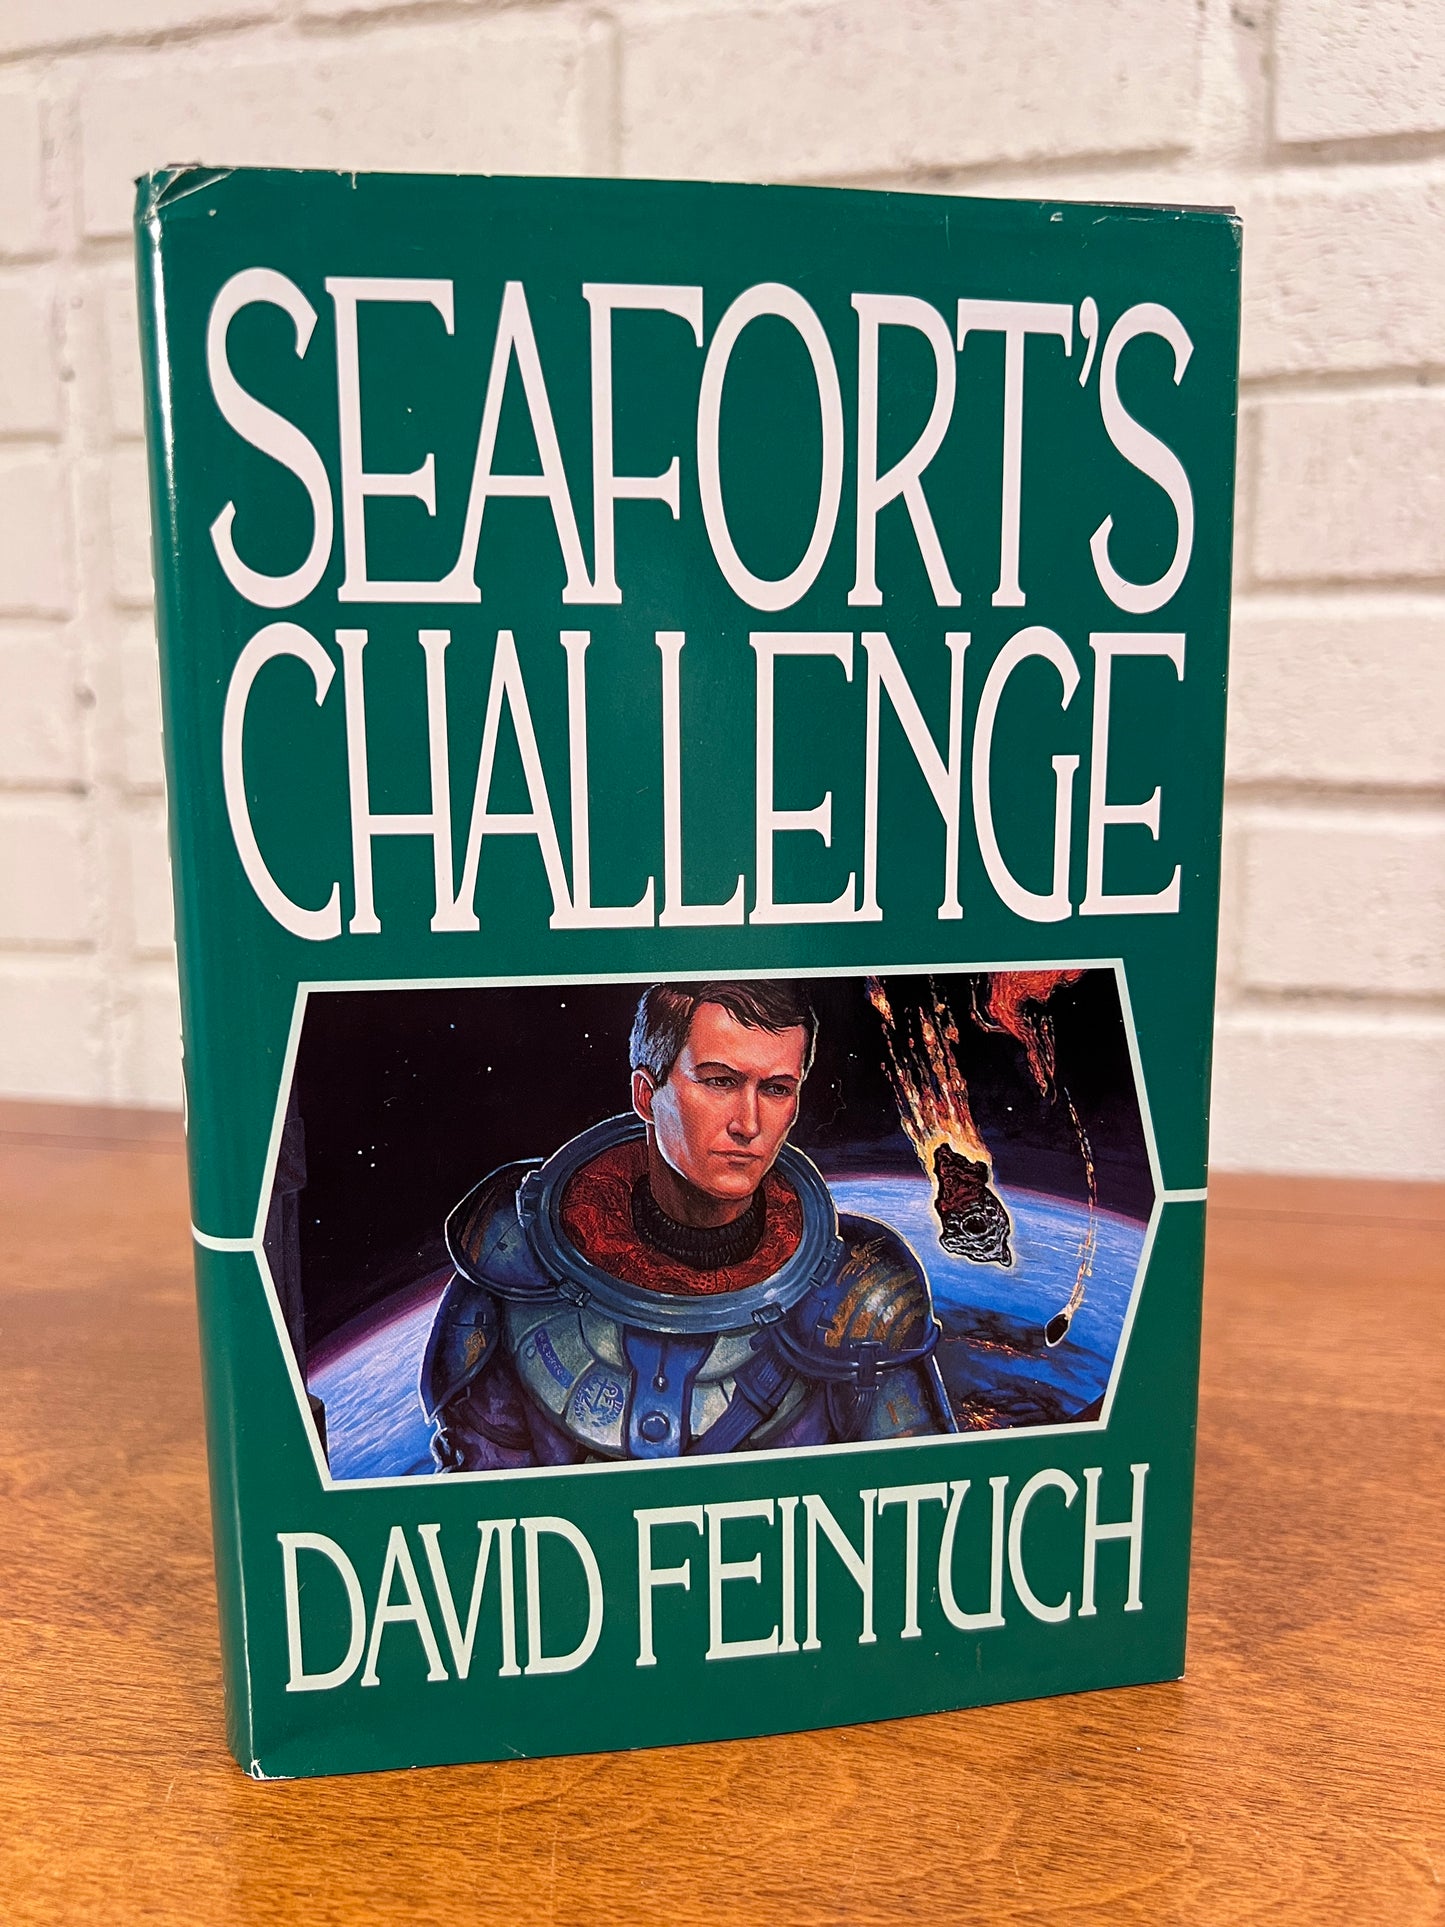 Seafort's Challenge by David Feintuch